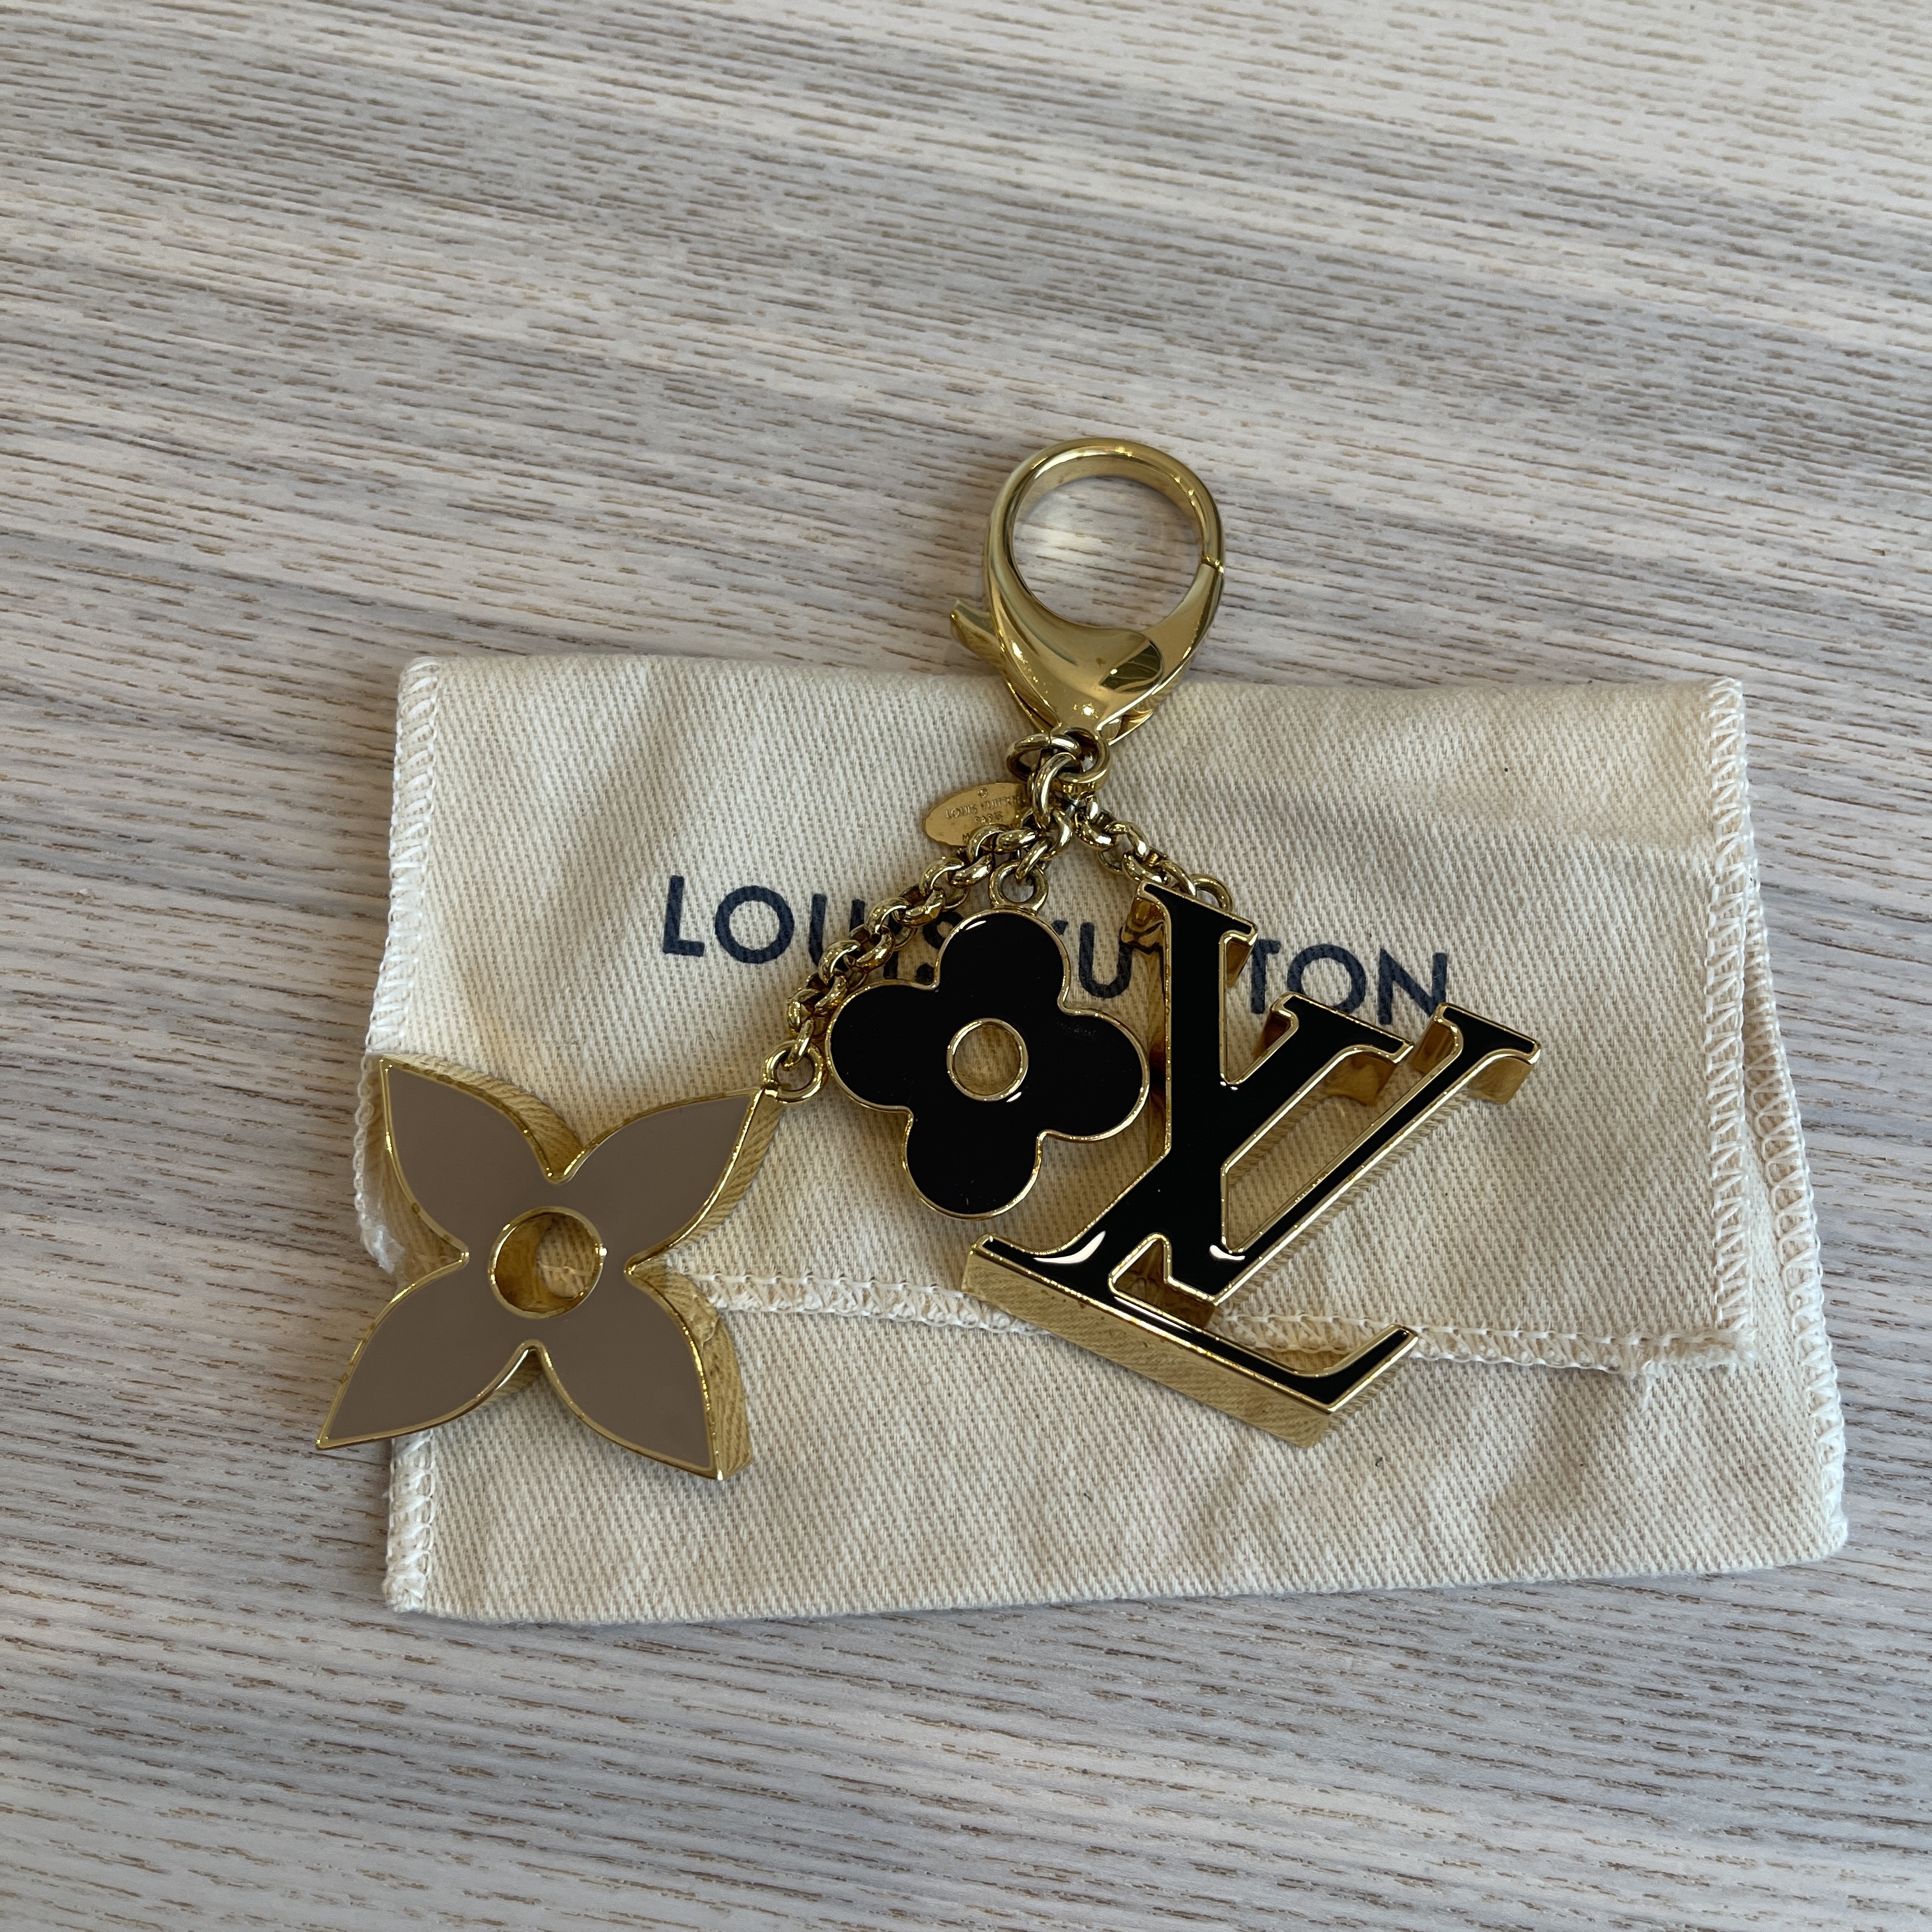 LOUIS VUITTON Fleur de Monogram Bag Charm Gold